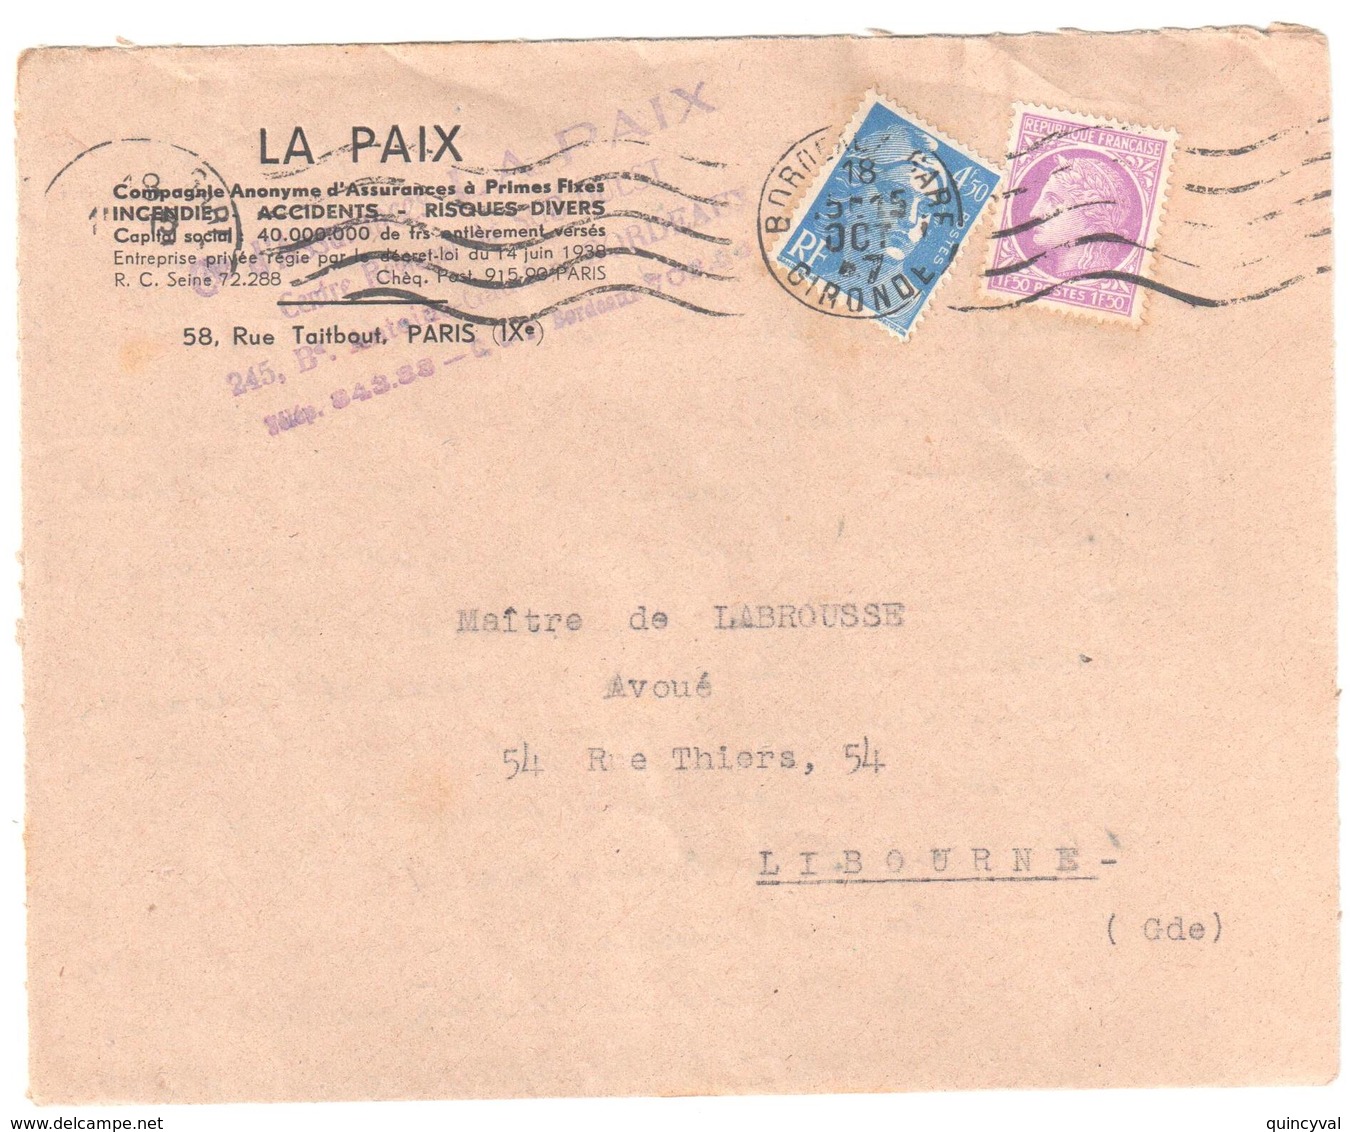 BORDEAUX Gare Gironde Lettre Entête Assurances LA PAIX 4,50F Gandon 1,50 F Mazelin Yv 718A 679 Ob 18 10 1947 - Covers & Documents